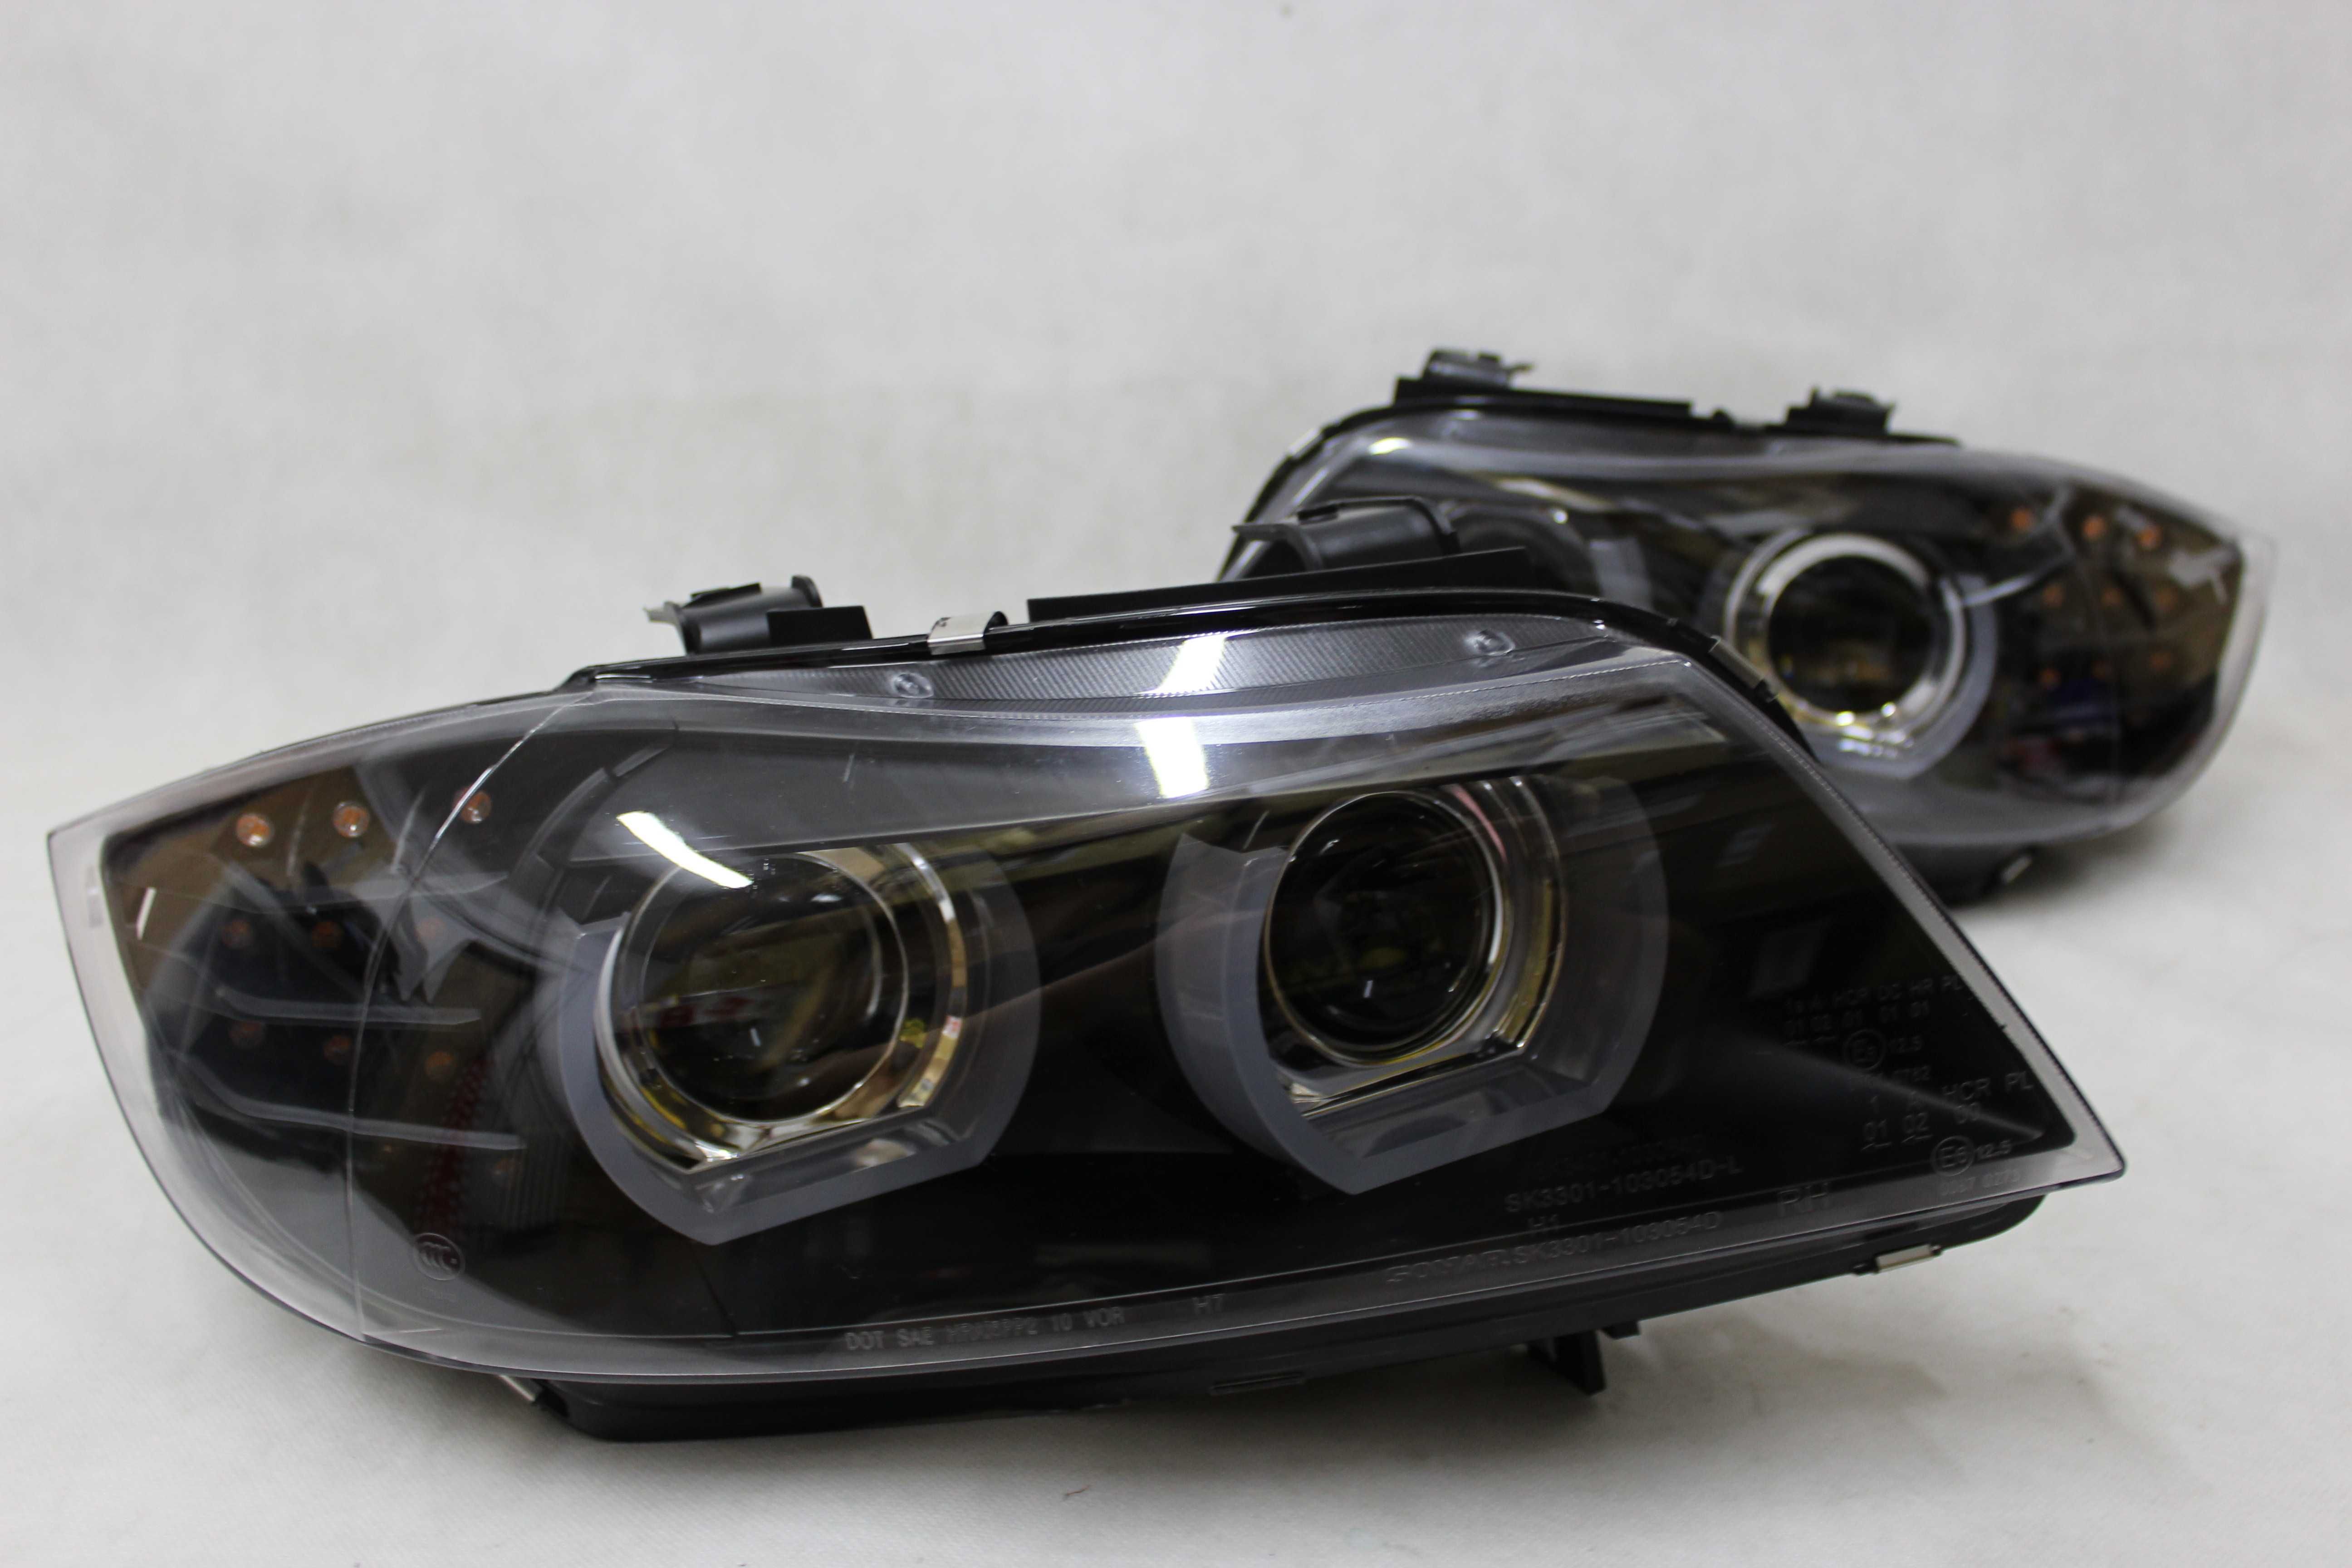 Lampy reflektory przednie przód BMW E90 09-11 LCI XENON AFS LED U-BAR